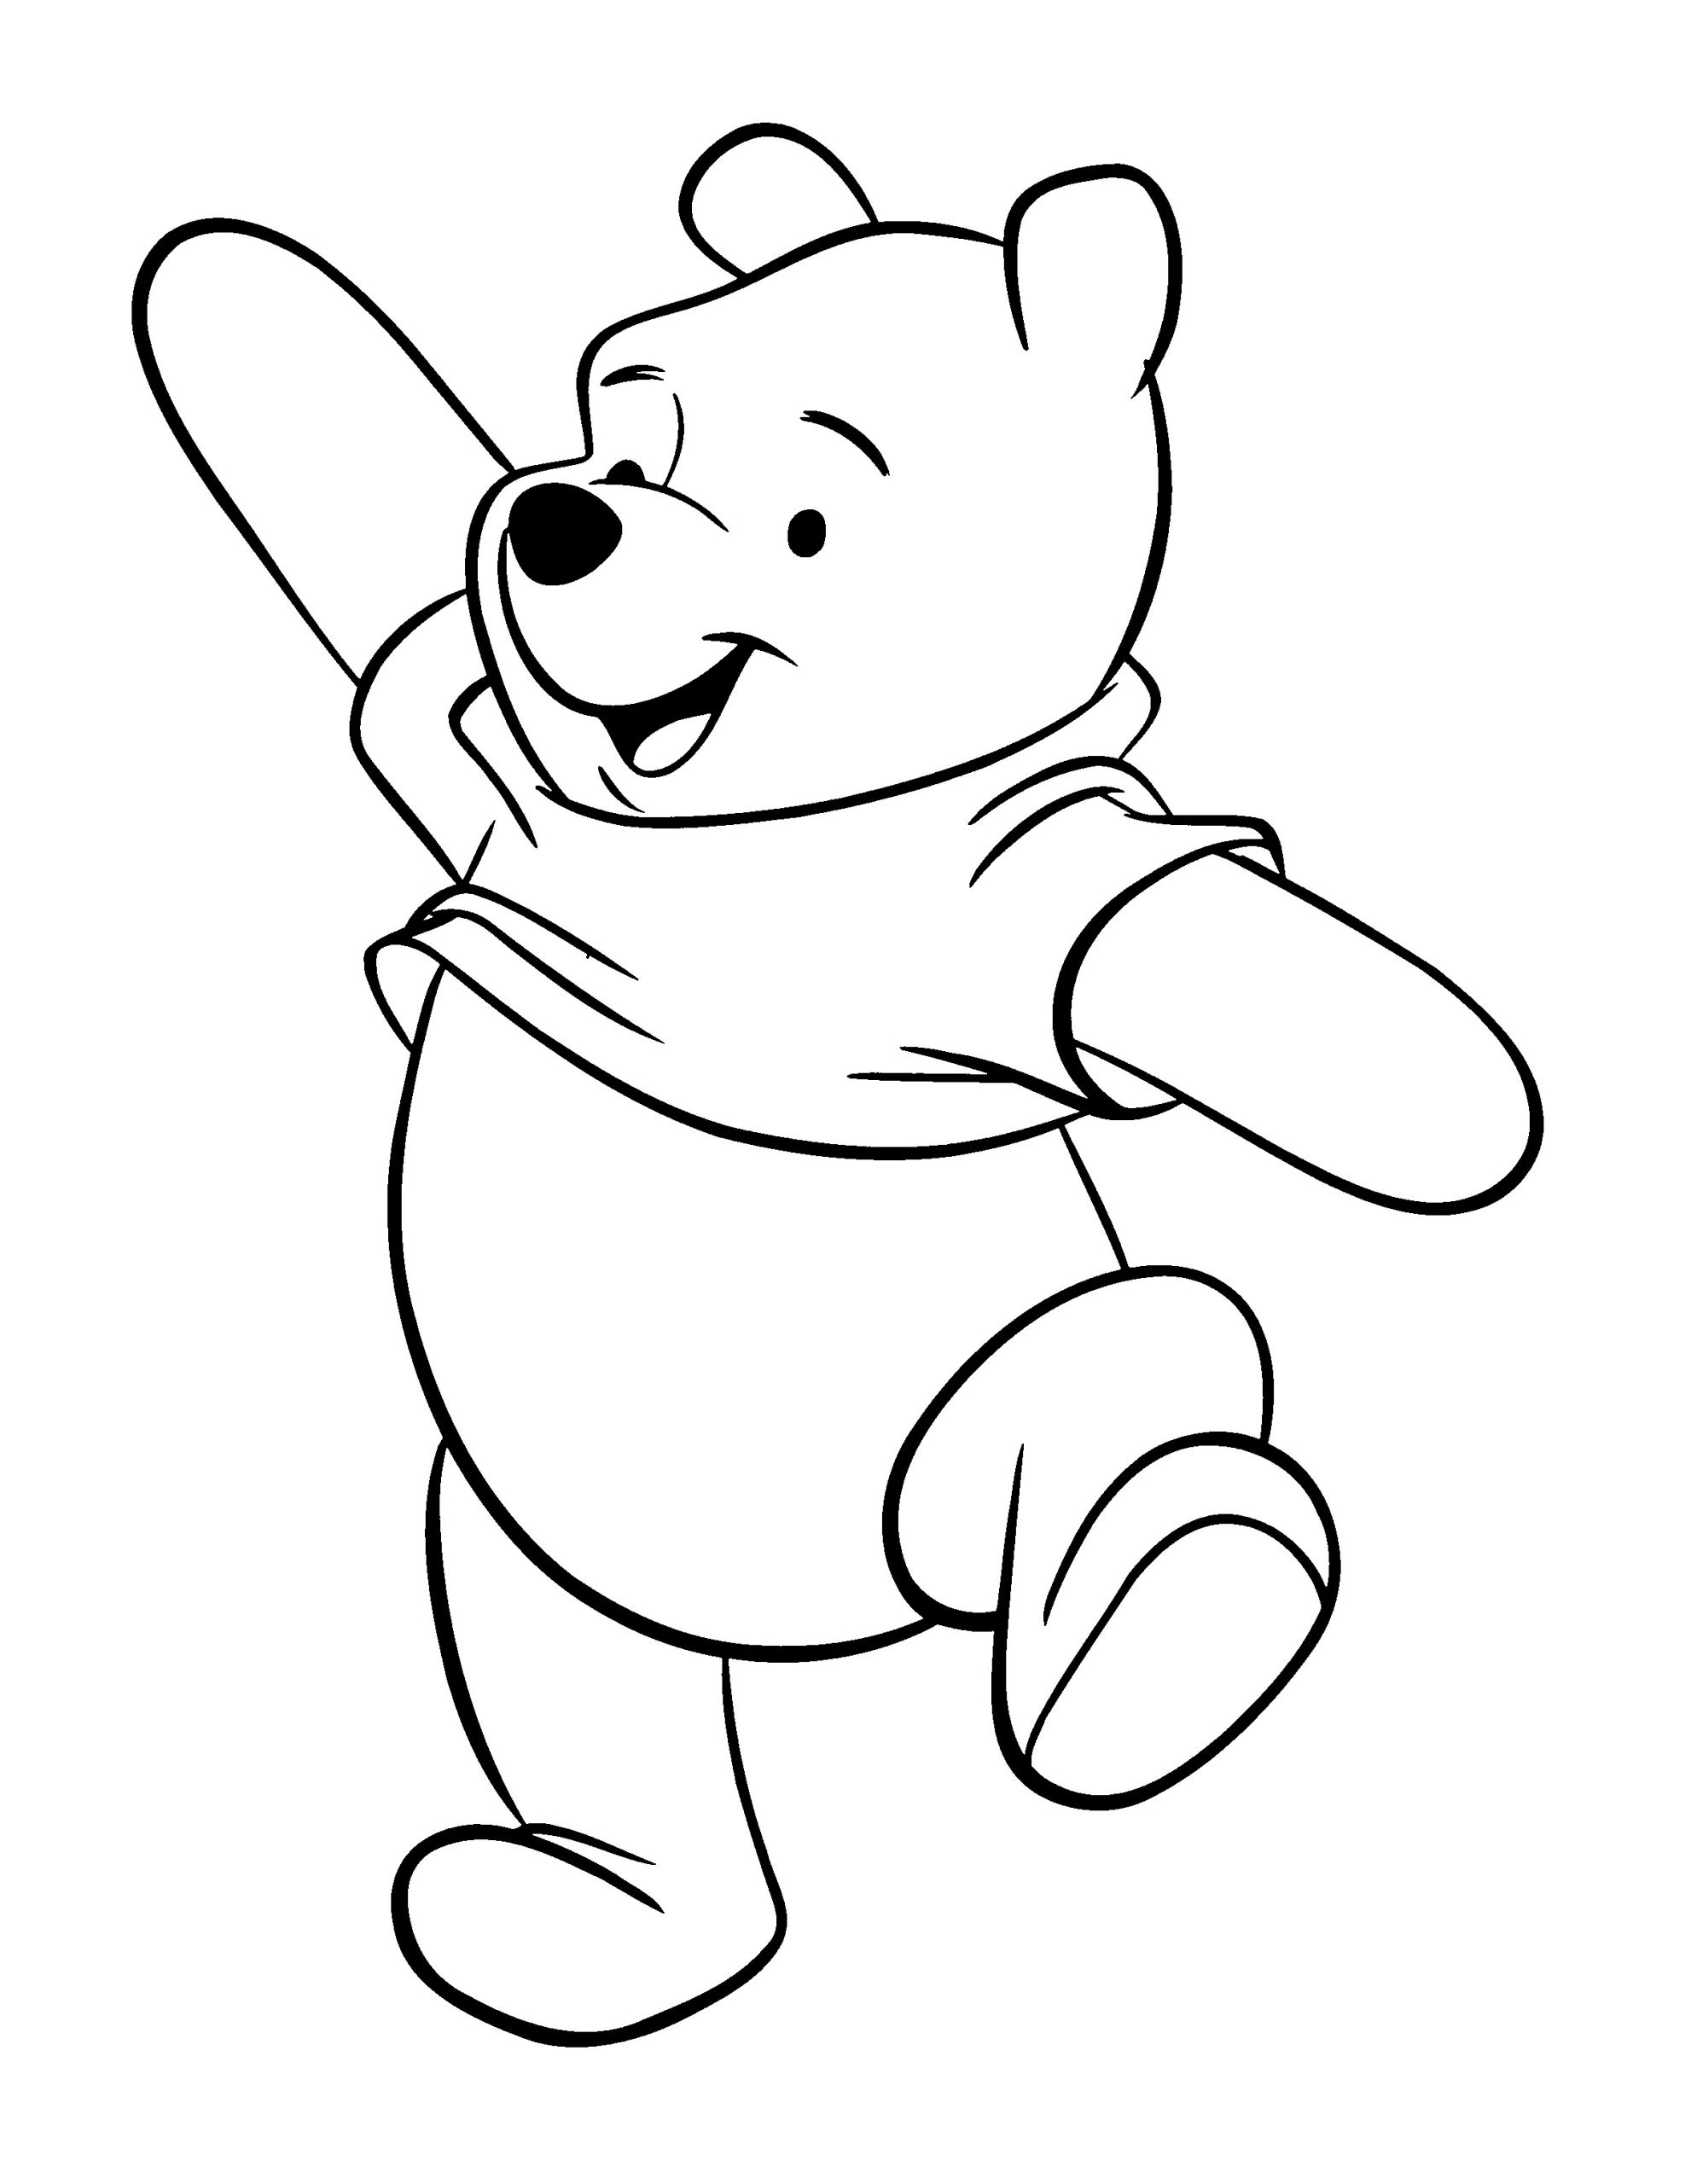 Tranh tô màu gấu Pooh vui vẻ